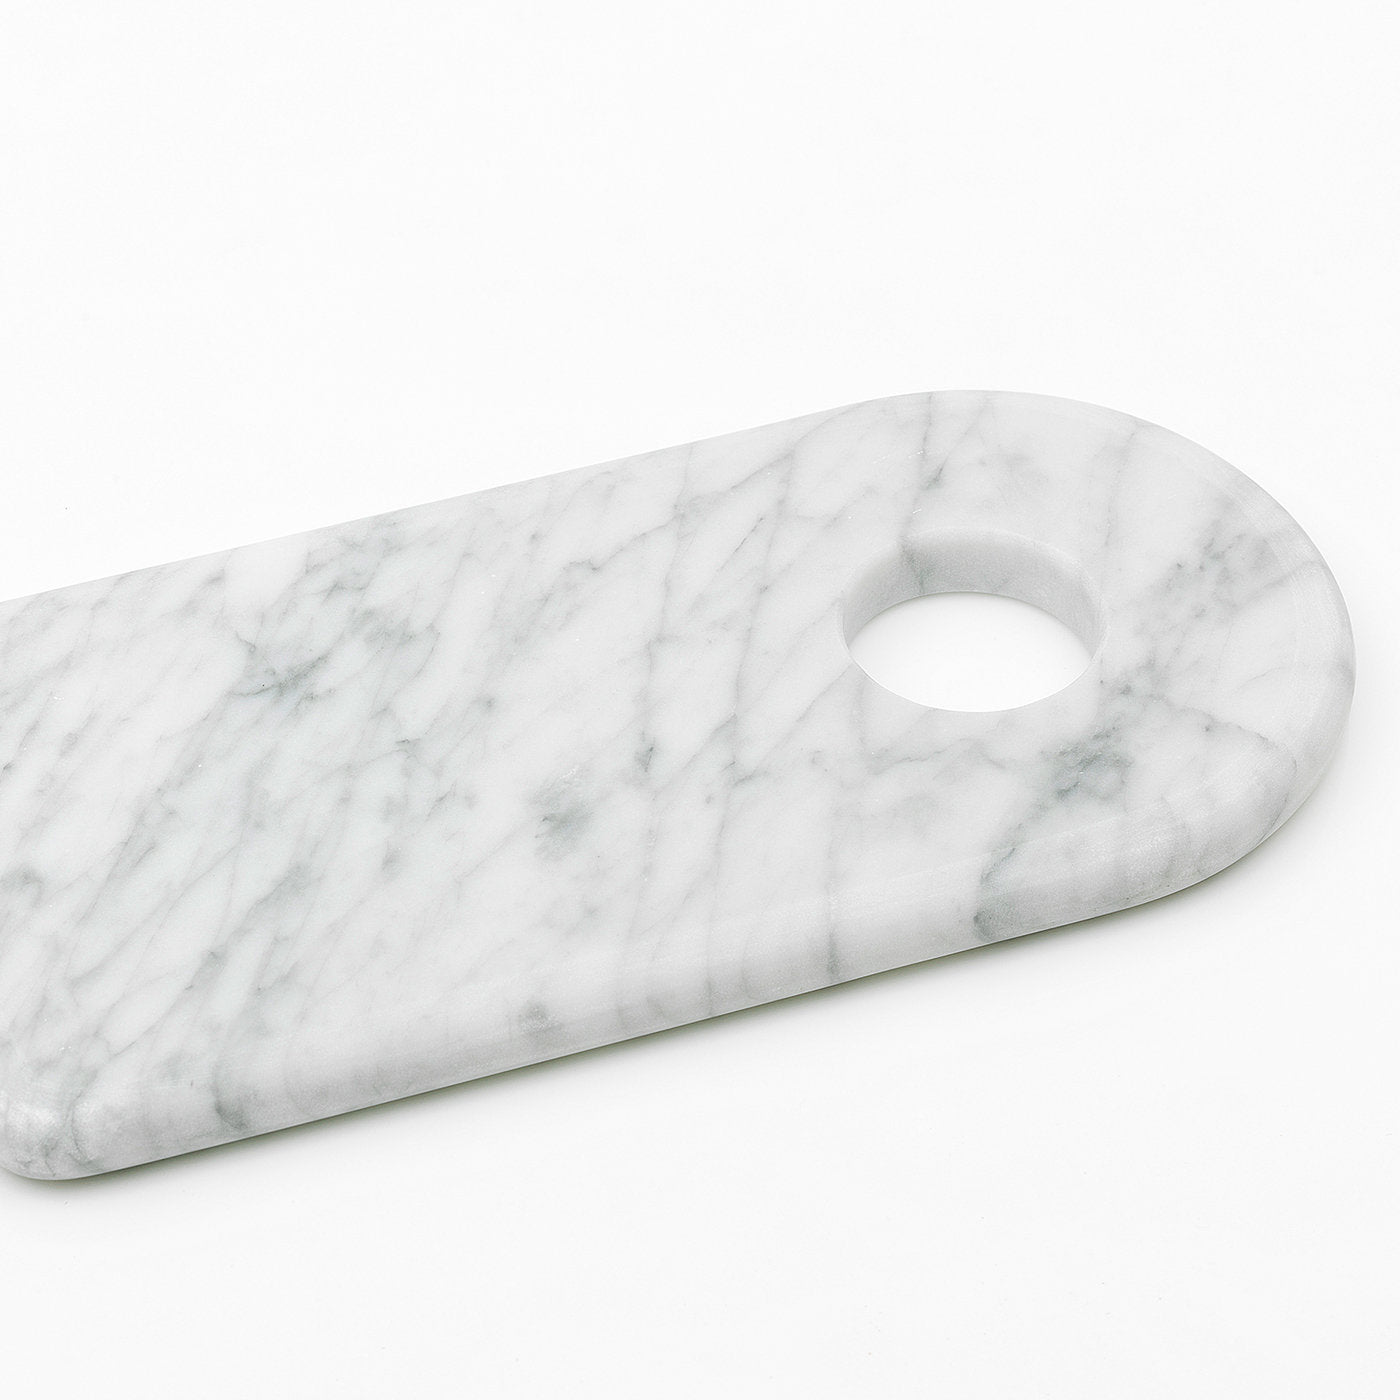 Planche à découper en marbre blanc avec trou - Vue alternative 1